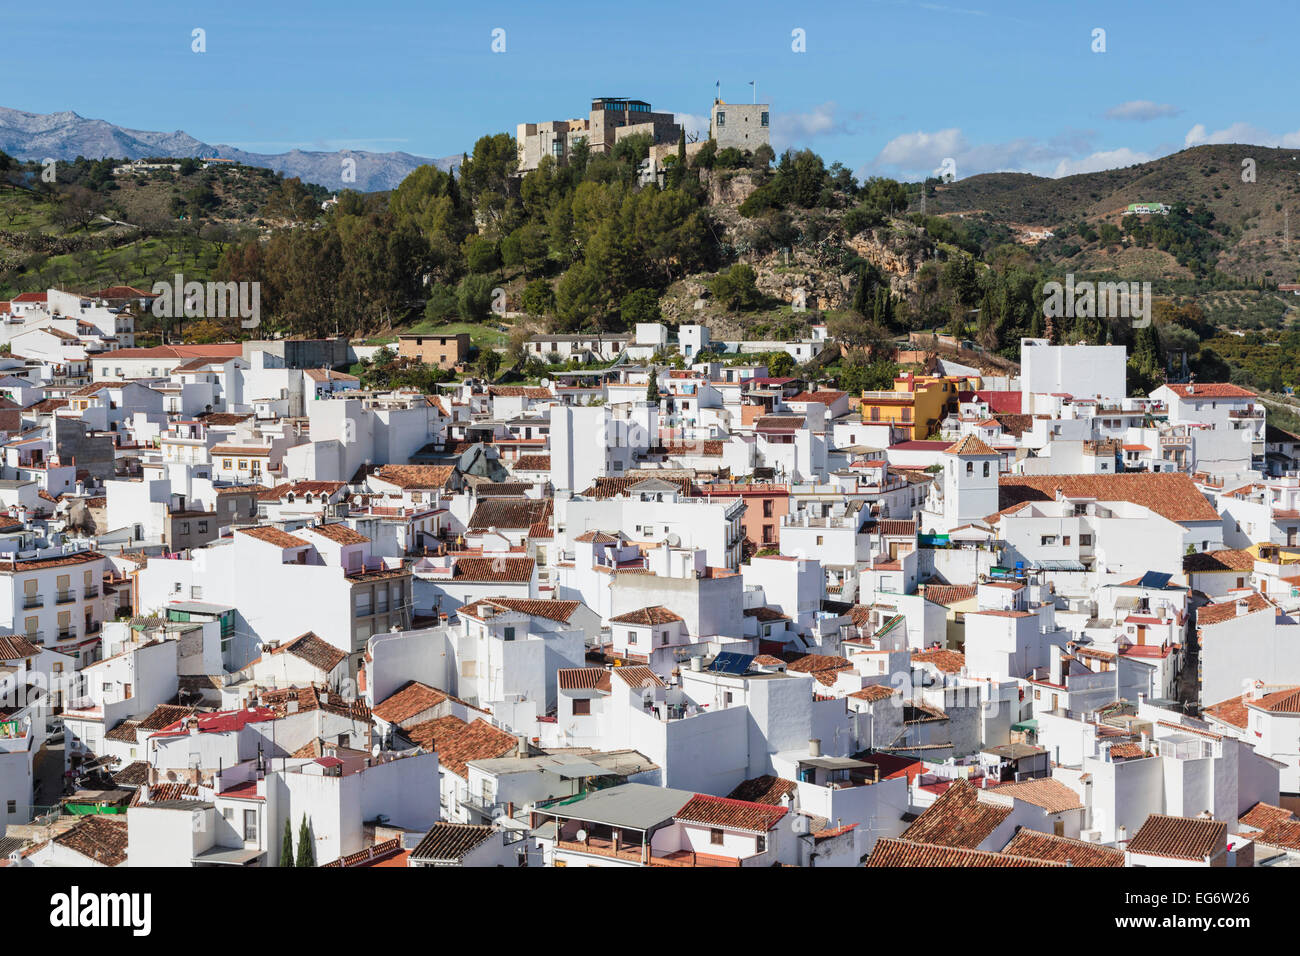 Monda, la province de Malaga, Andalousie, Espagne du sud. Blanchis à la typique ville espagnole. Banque D'Images